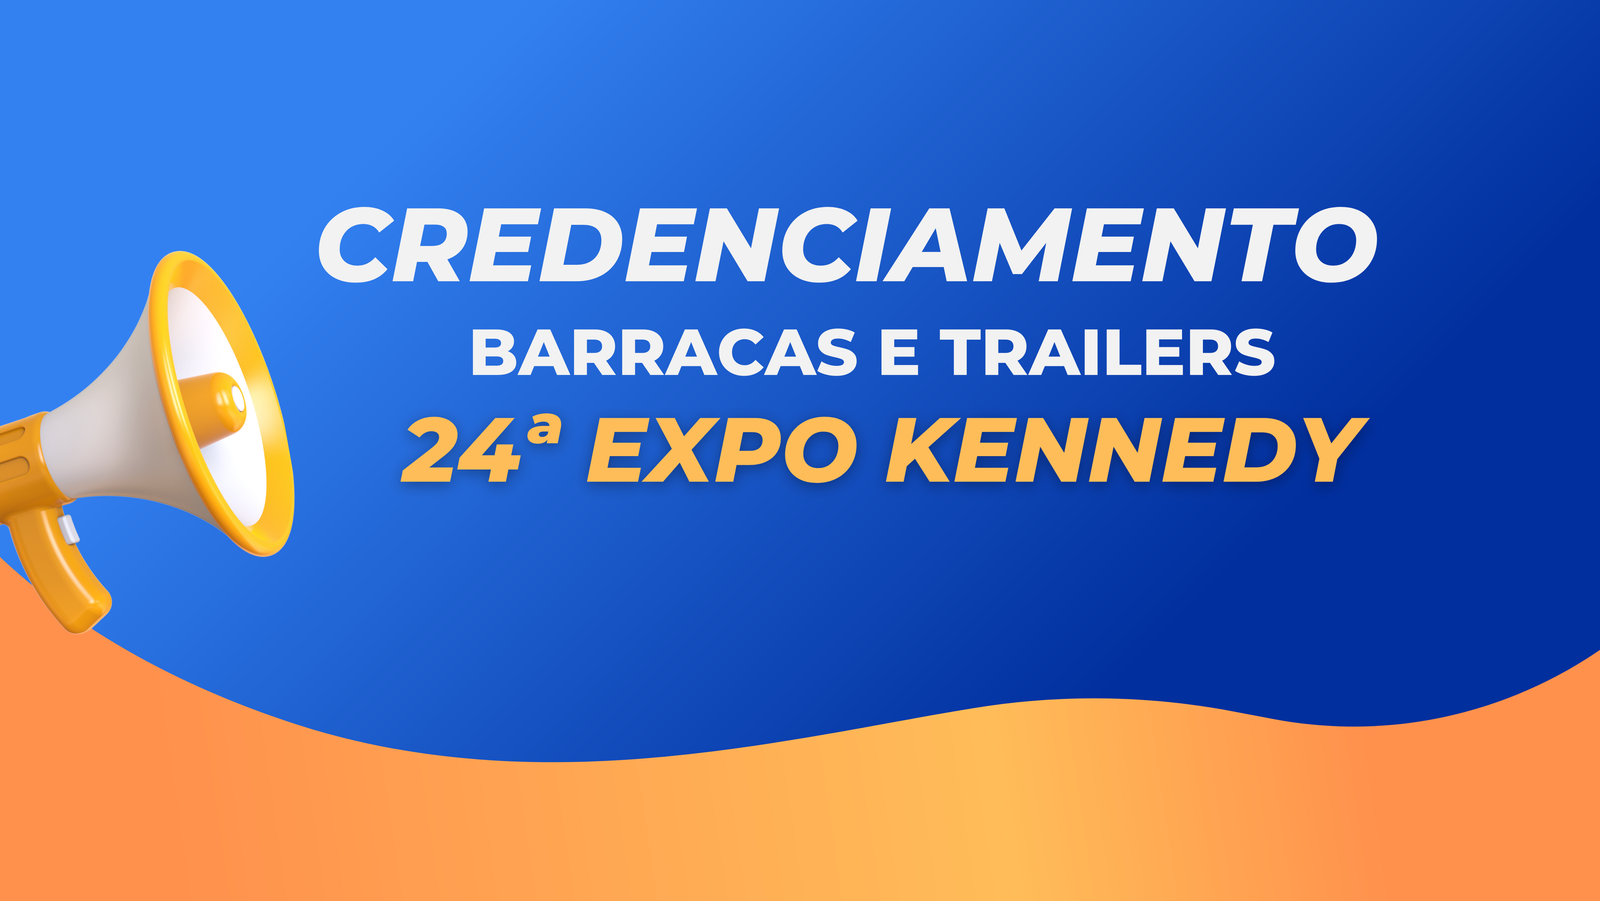 Credenciamento de barracas e trailers para a 24ª ExpoKennedy começa nesta segunda-feira (19)